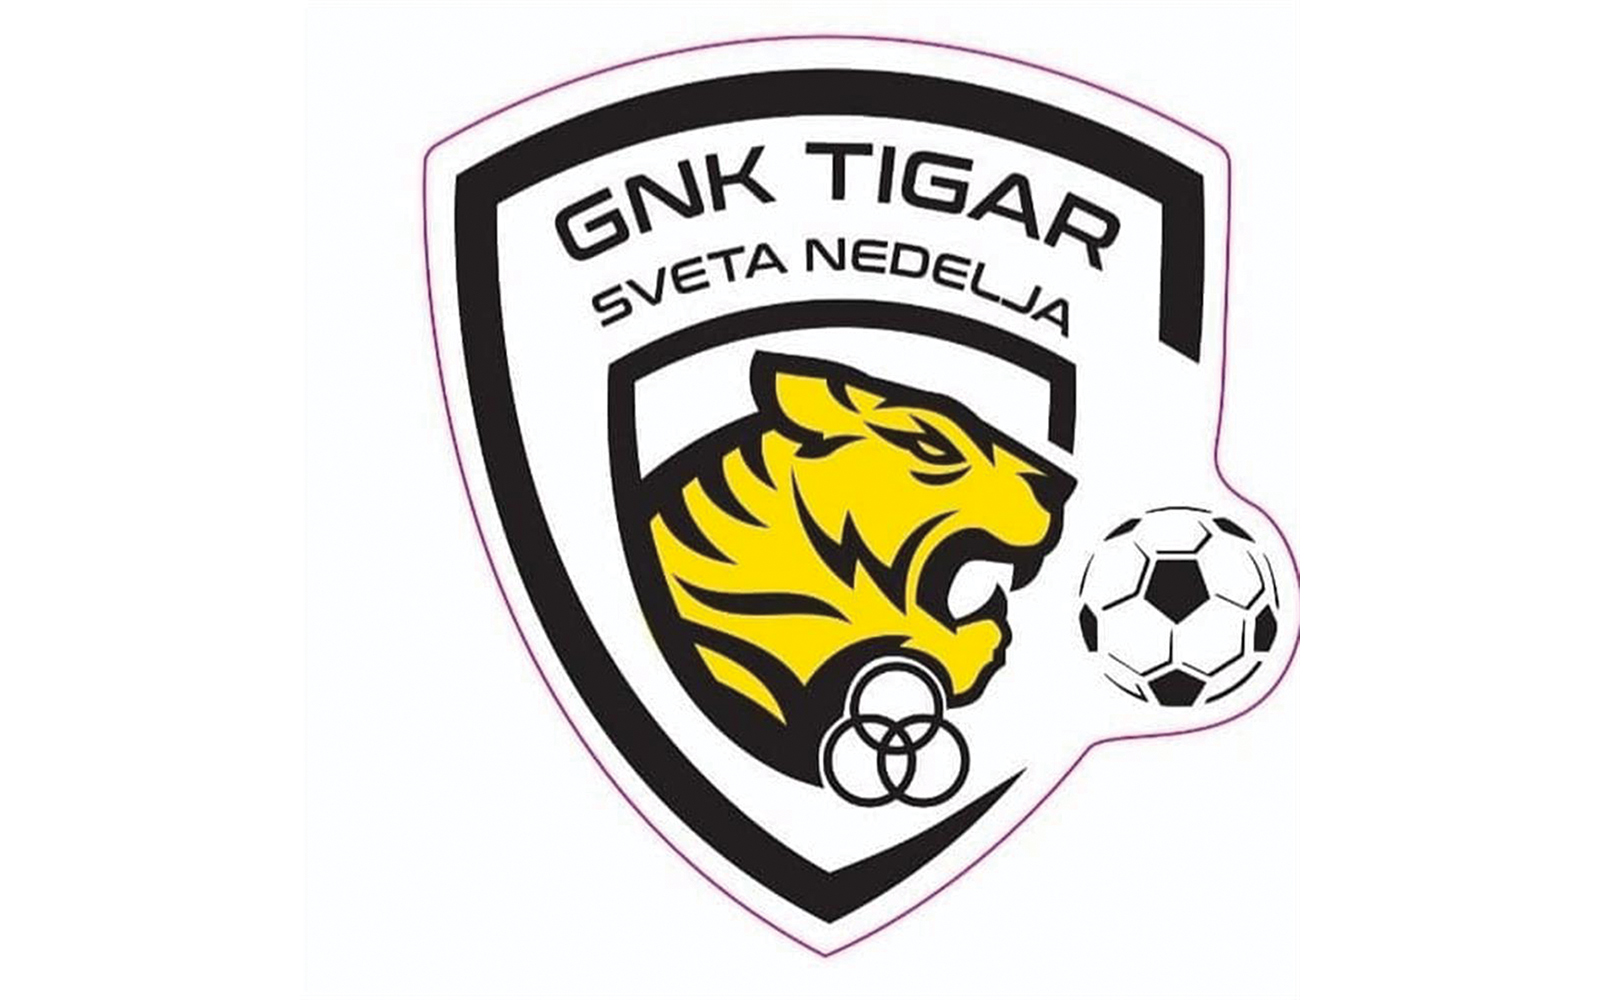 4. NL središte Zagreb – B - 4. kolo
GNK Tigar Sveta Nedelja - Gradići 3:1 (1:0)